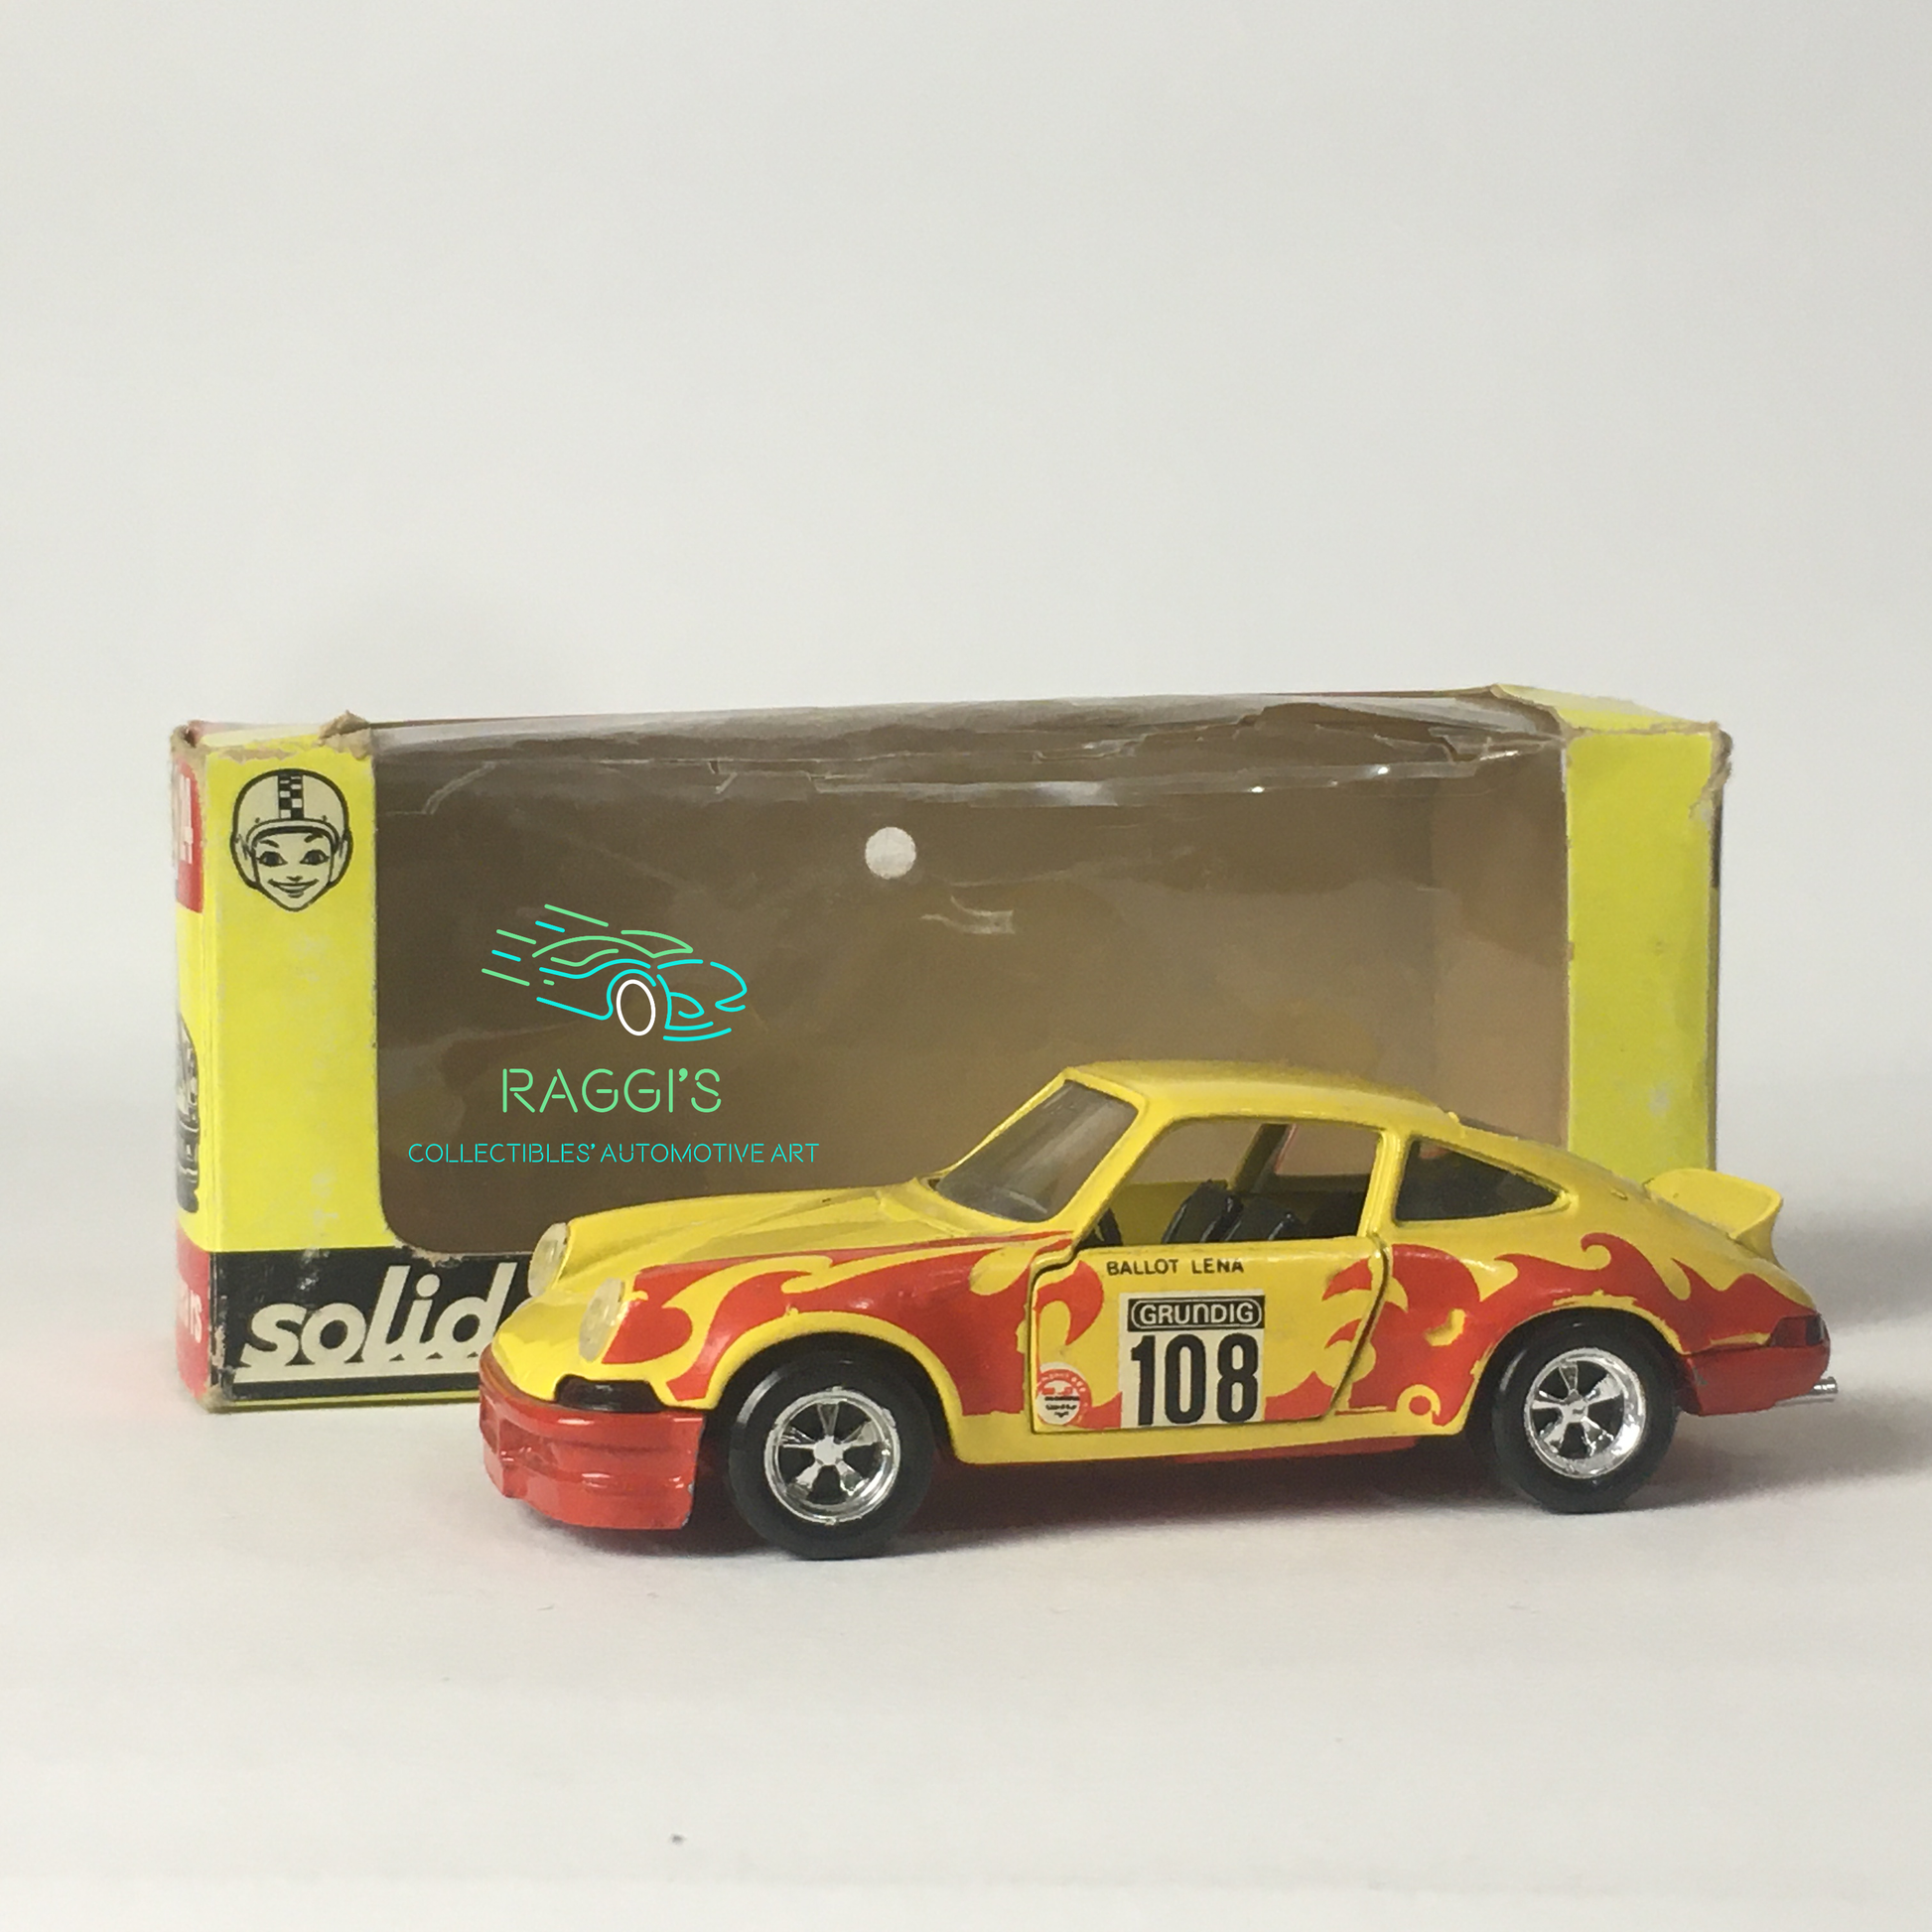 Porsche, Modellino Solido in Metallo Pressofuso Porsche Carrera RS Anno 1974 Scala 1:43 - Raggi's Collectibles' Automotive Art